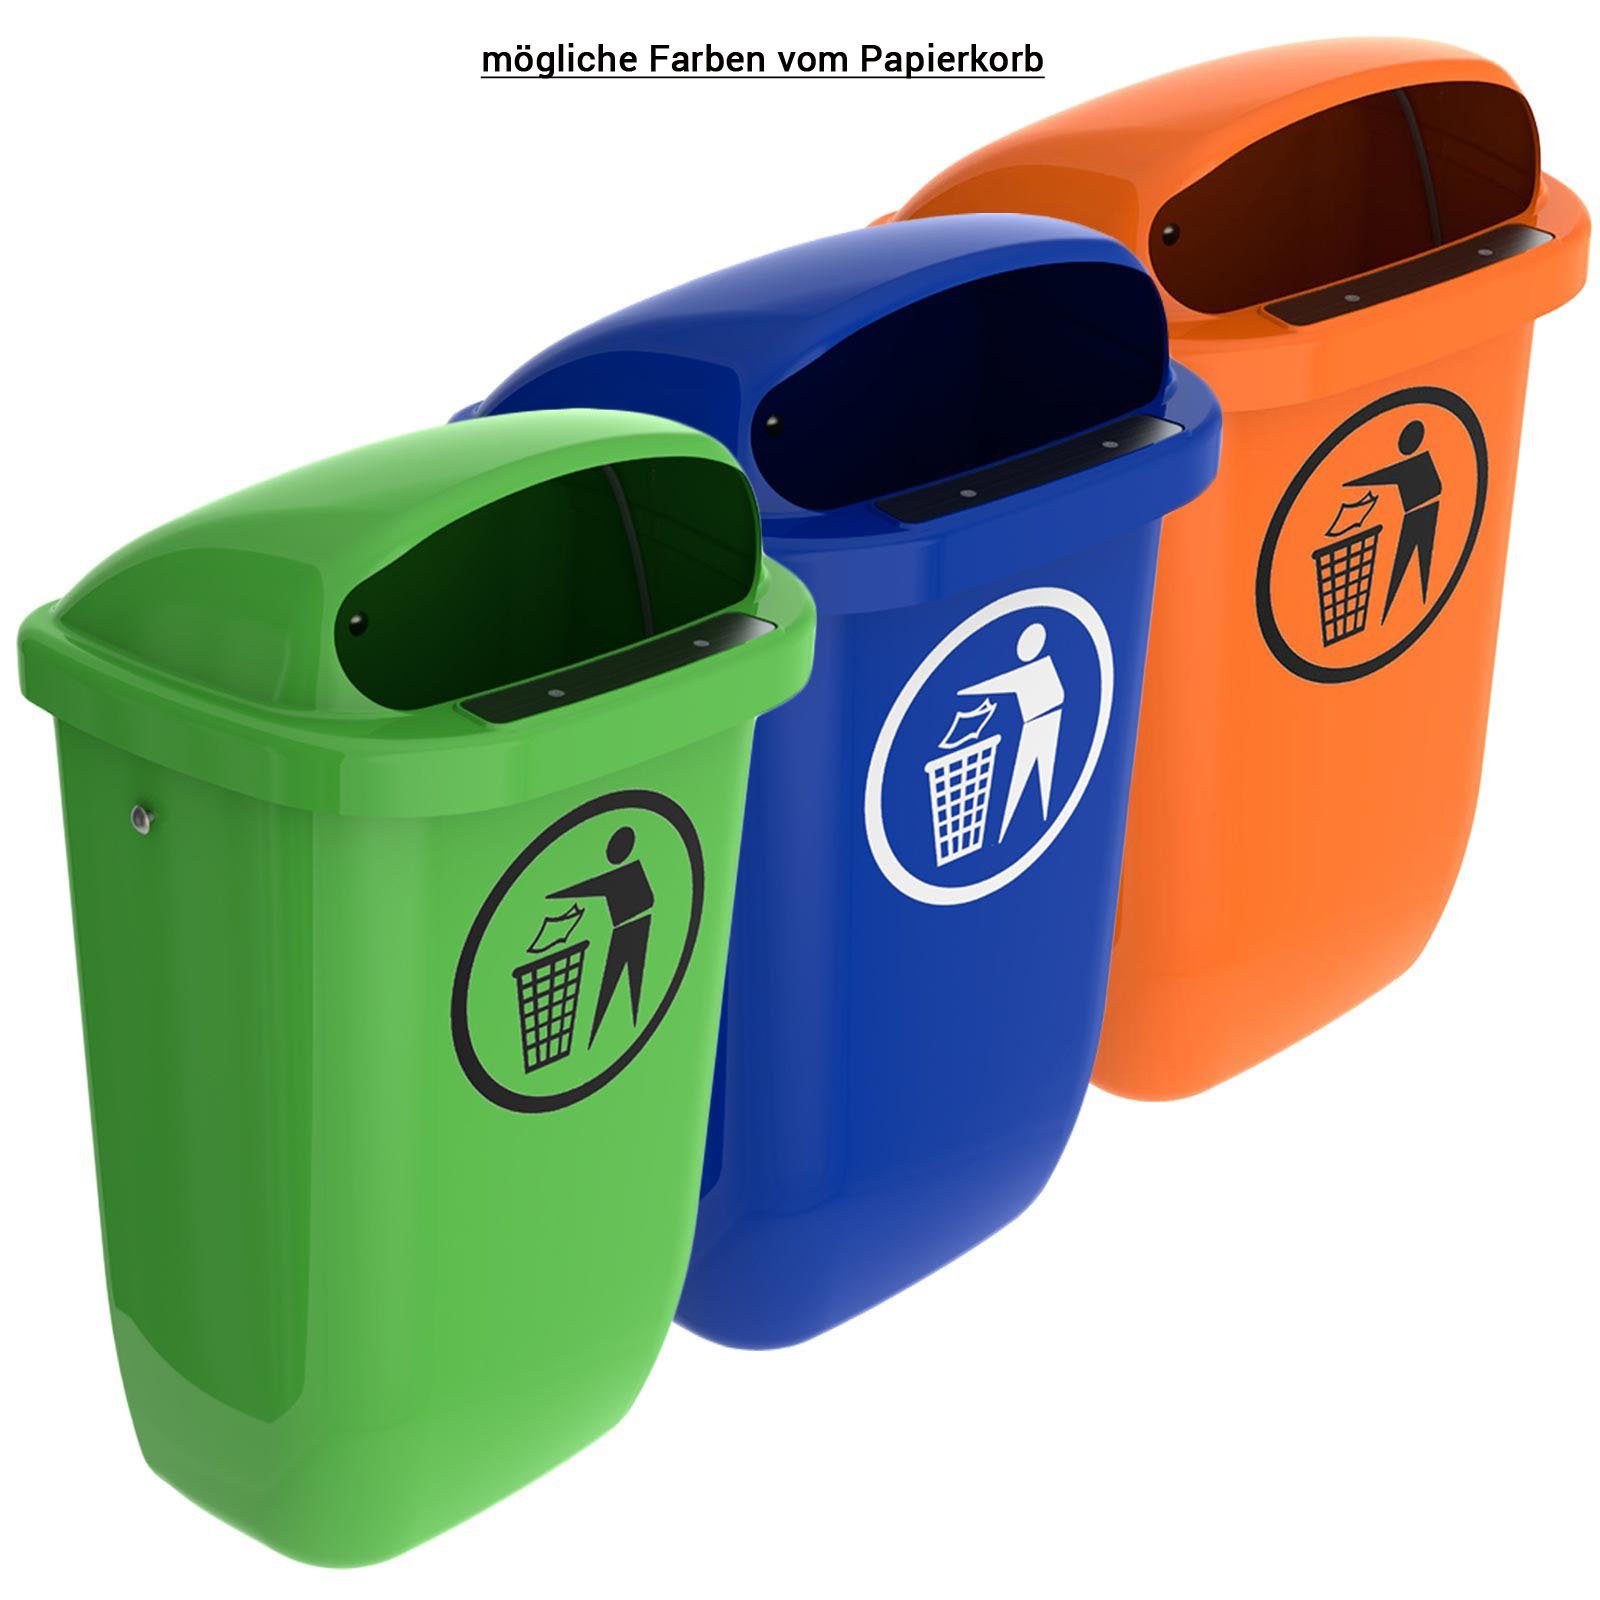 SULO Mülleimer Sulo Original Set Abfallbehälter Papierkorb mit Regenhaube grün